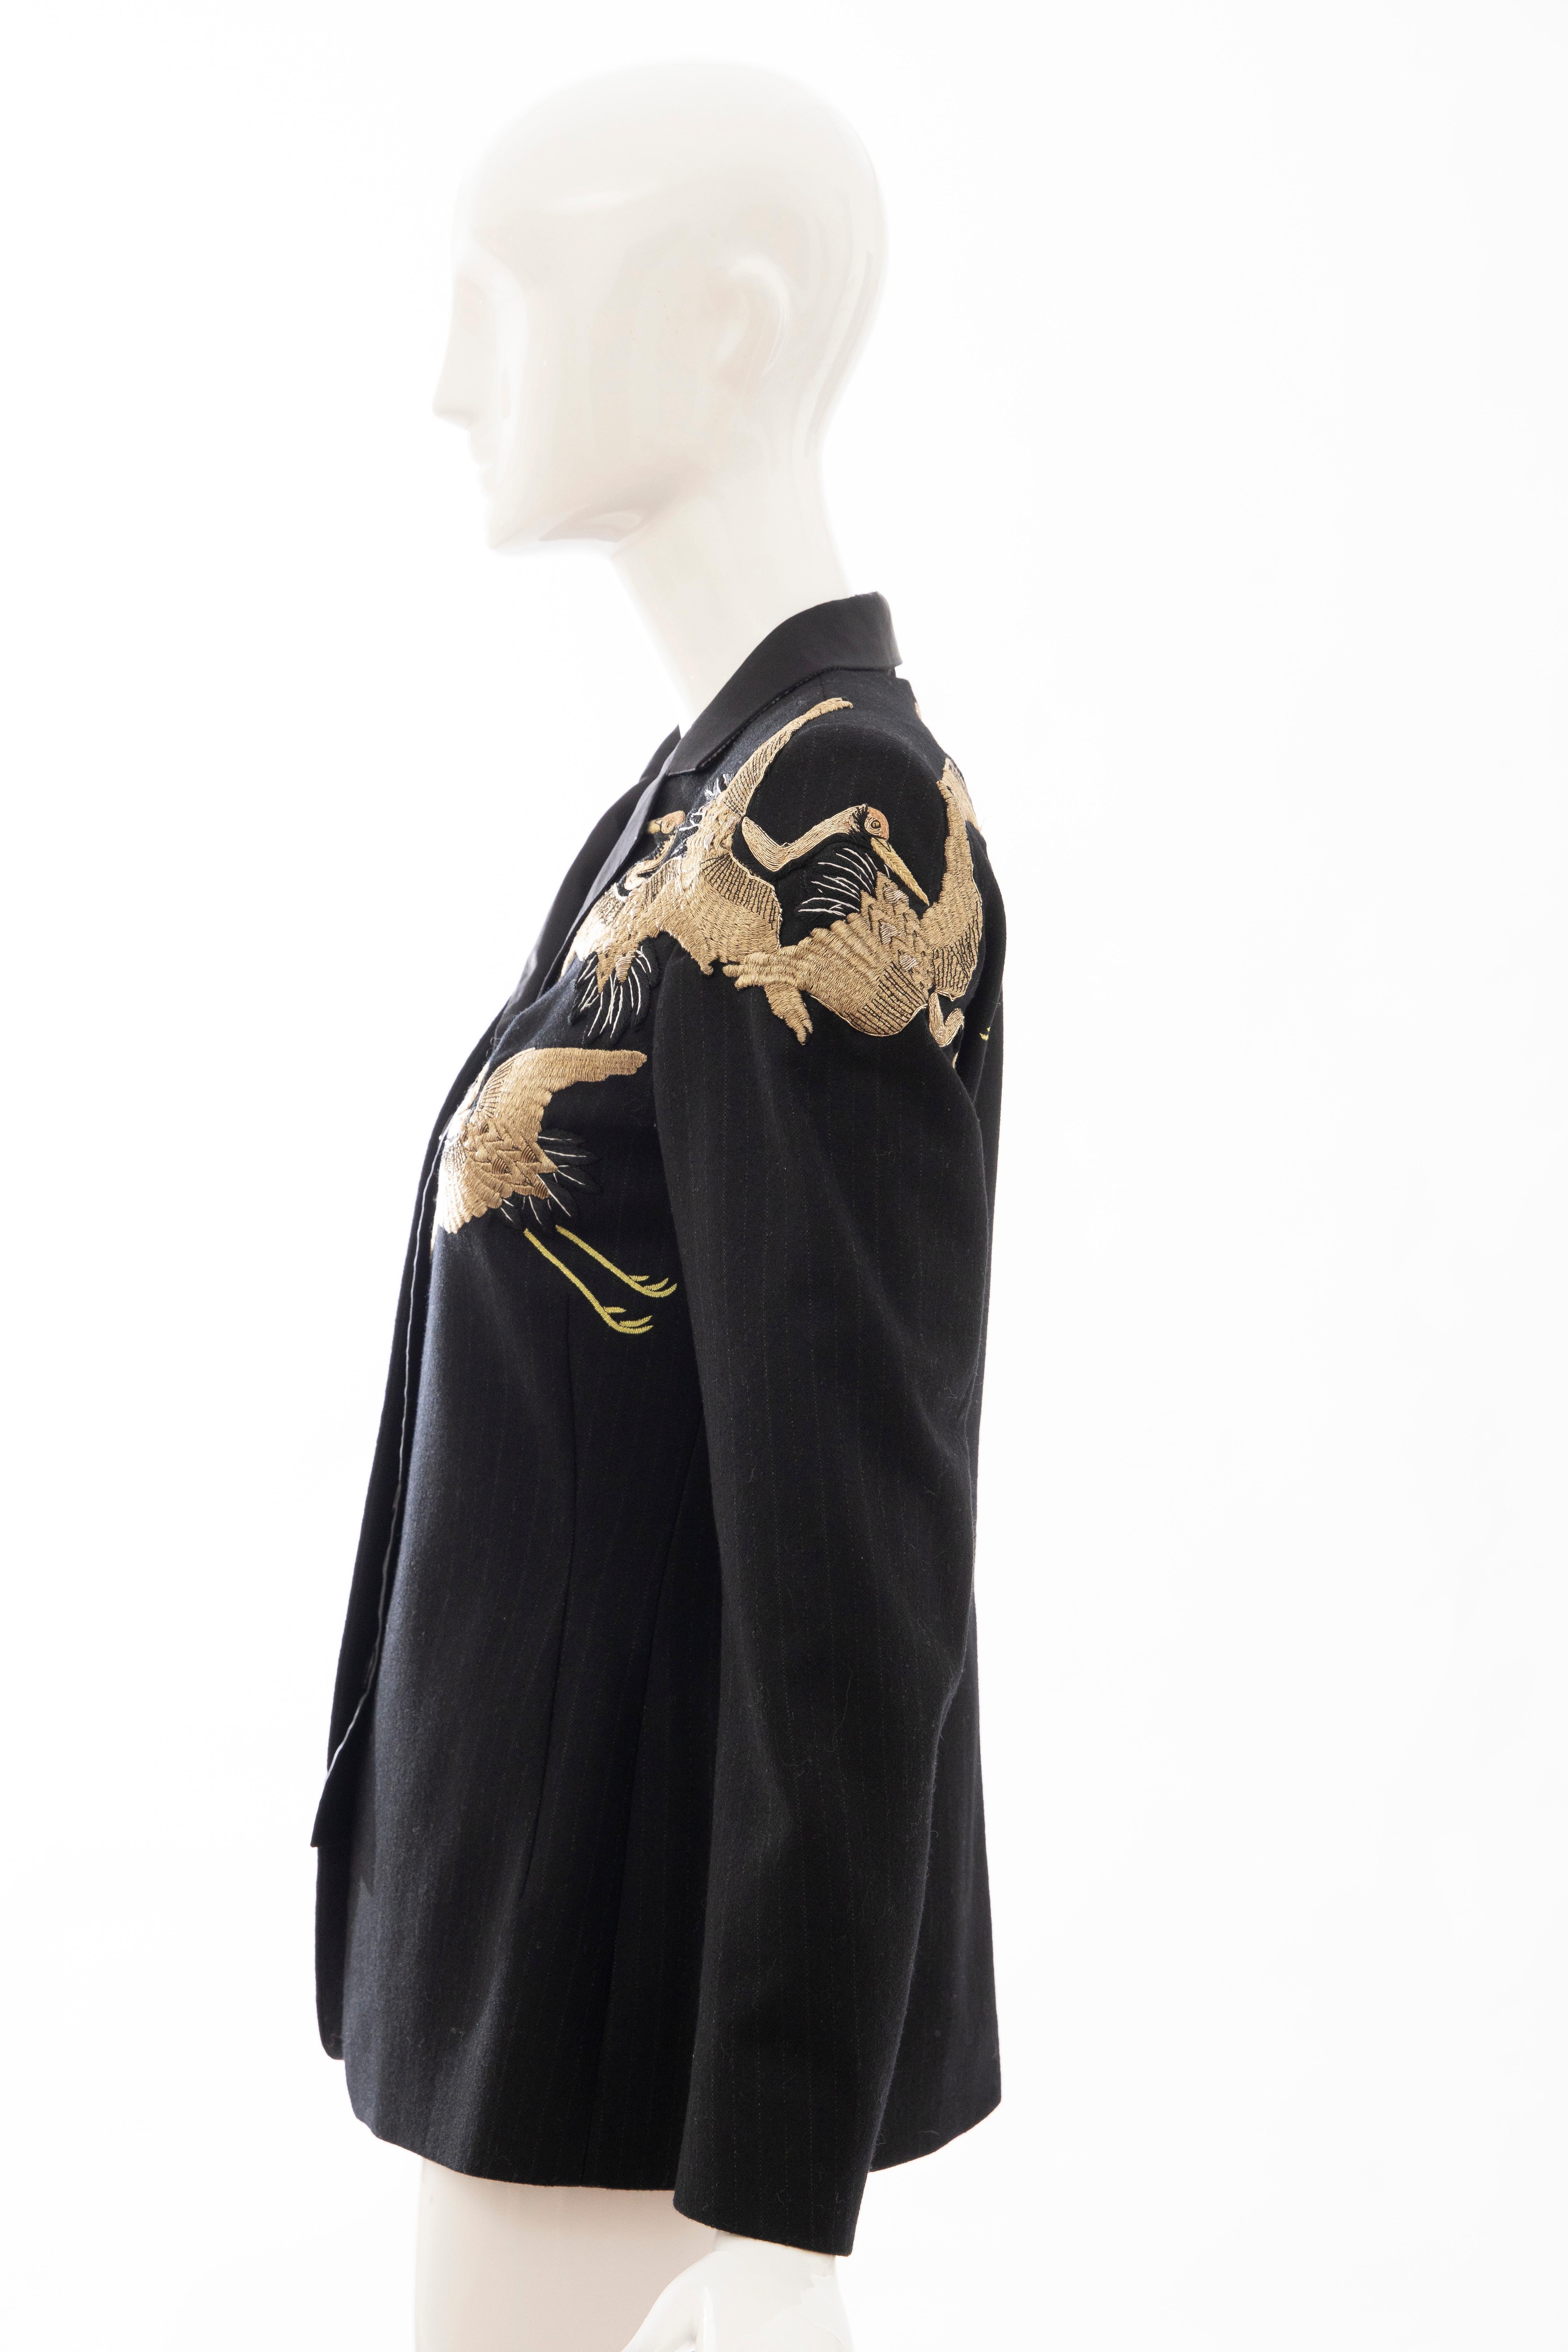 Dries van Noten Runway Black Wool Pinstripe Embroidered Jacket, Fall 2012 4